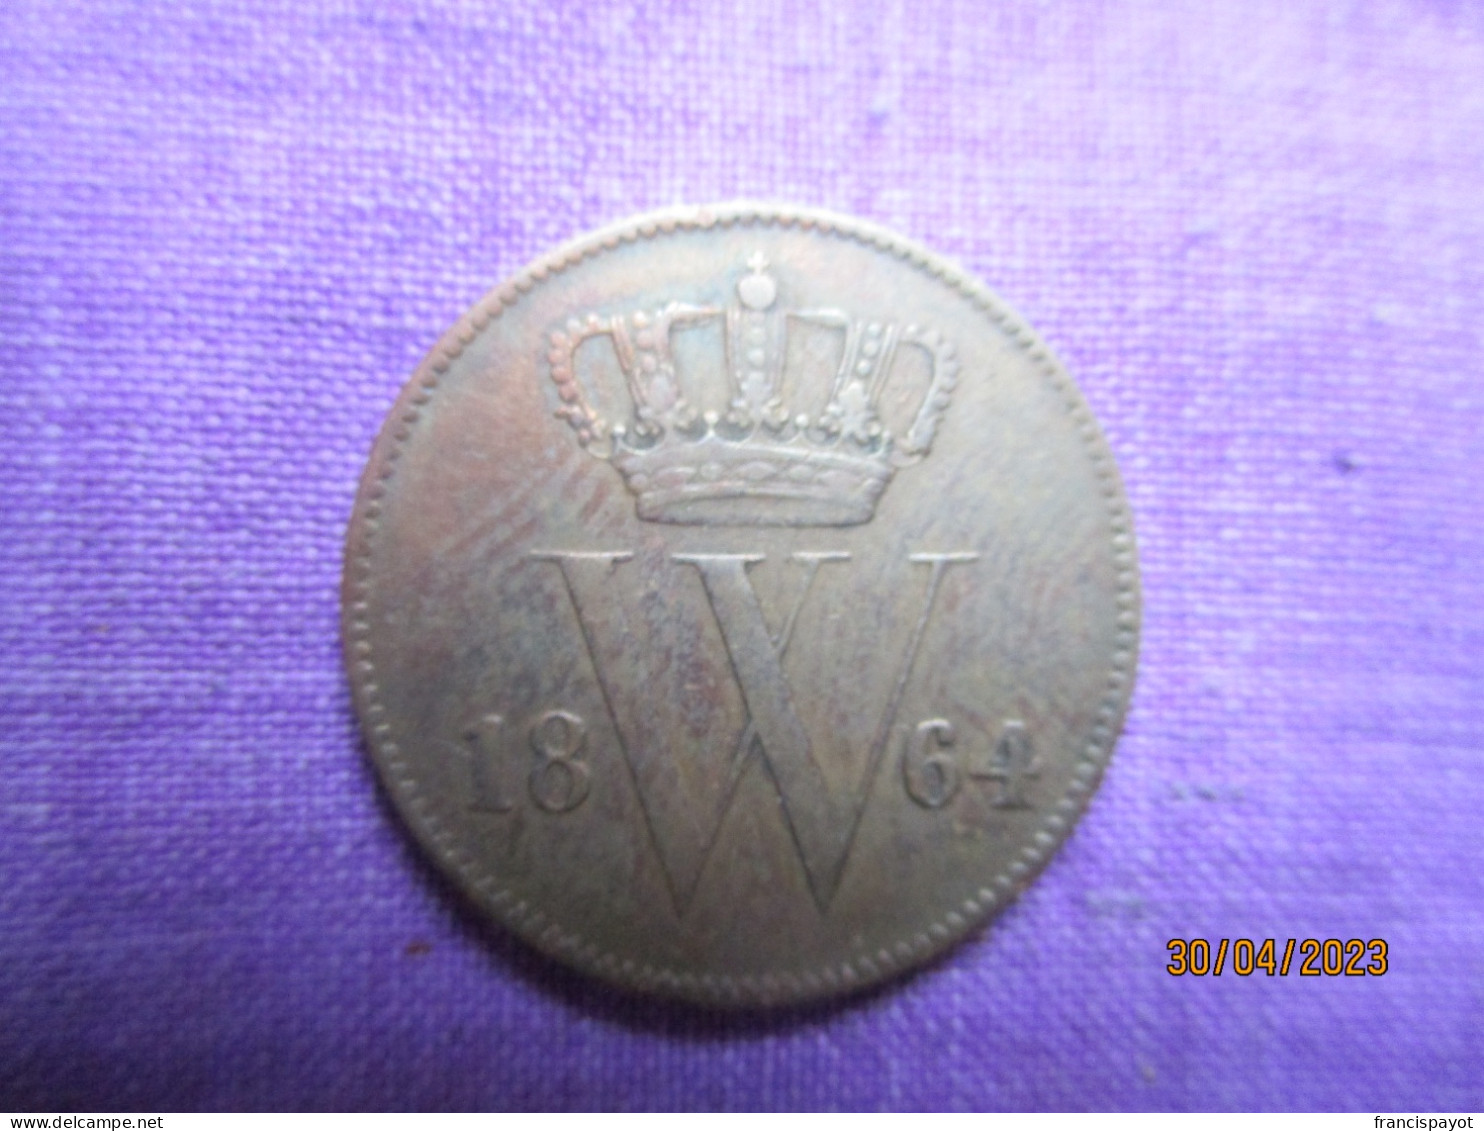 Netherlands: 1 Cent 1864 - 1815-1840: Willem I.